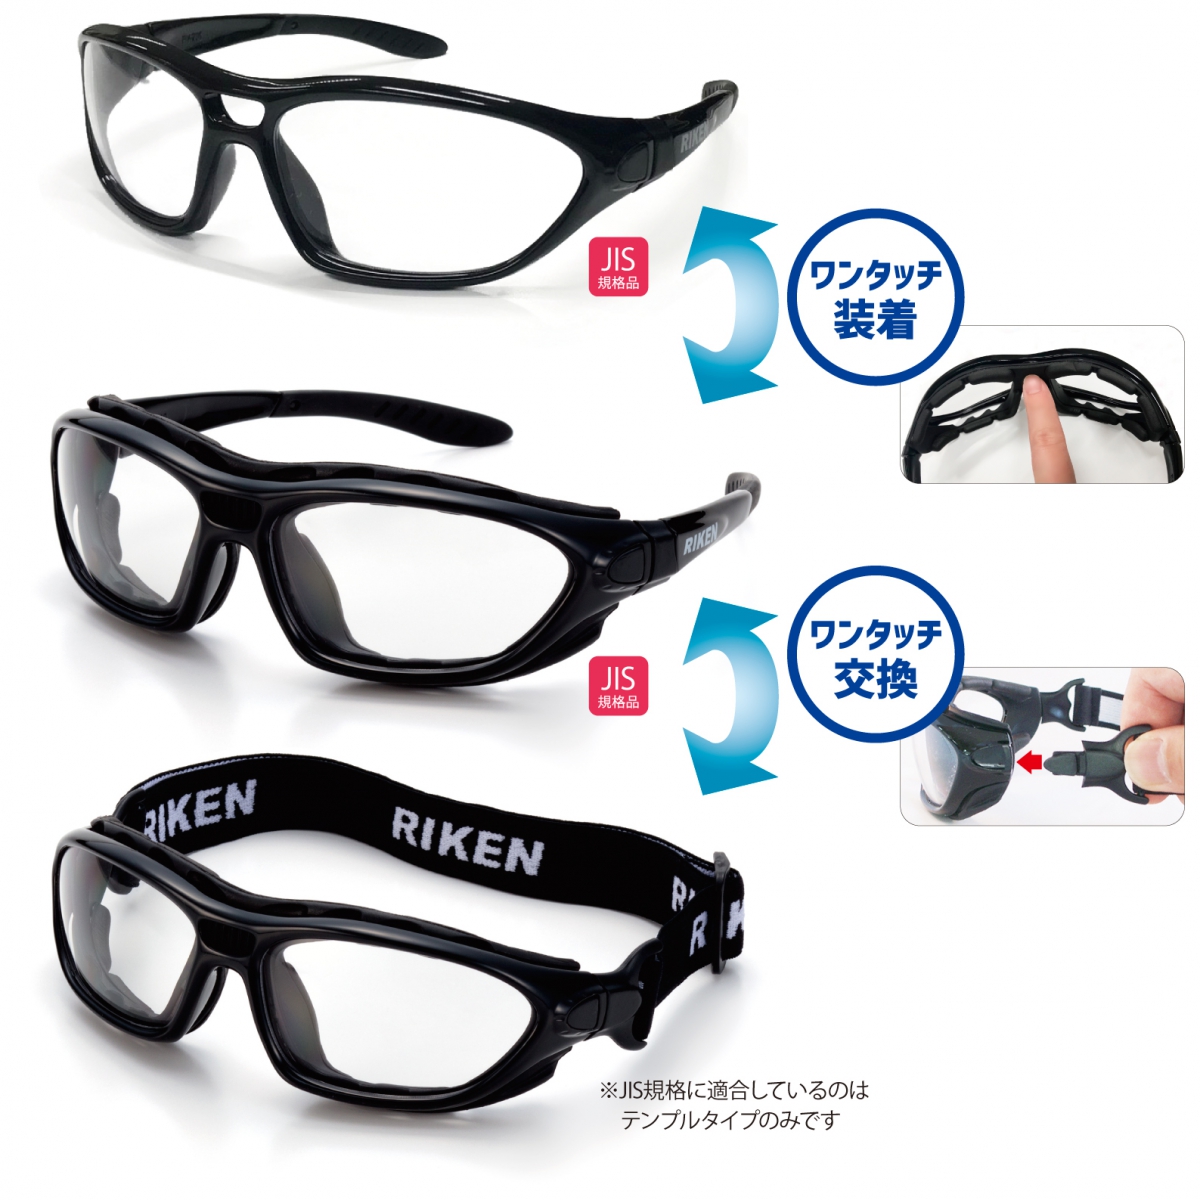 57％以上節約 一眼式保護メガネ 710 NIKKO 曇り止め加工 紫外線100％カット